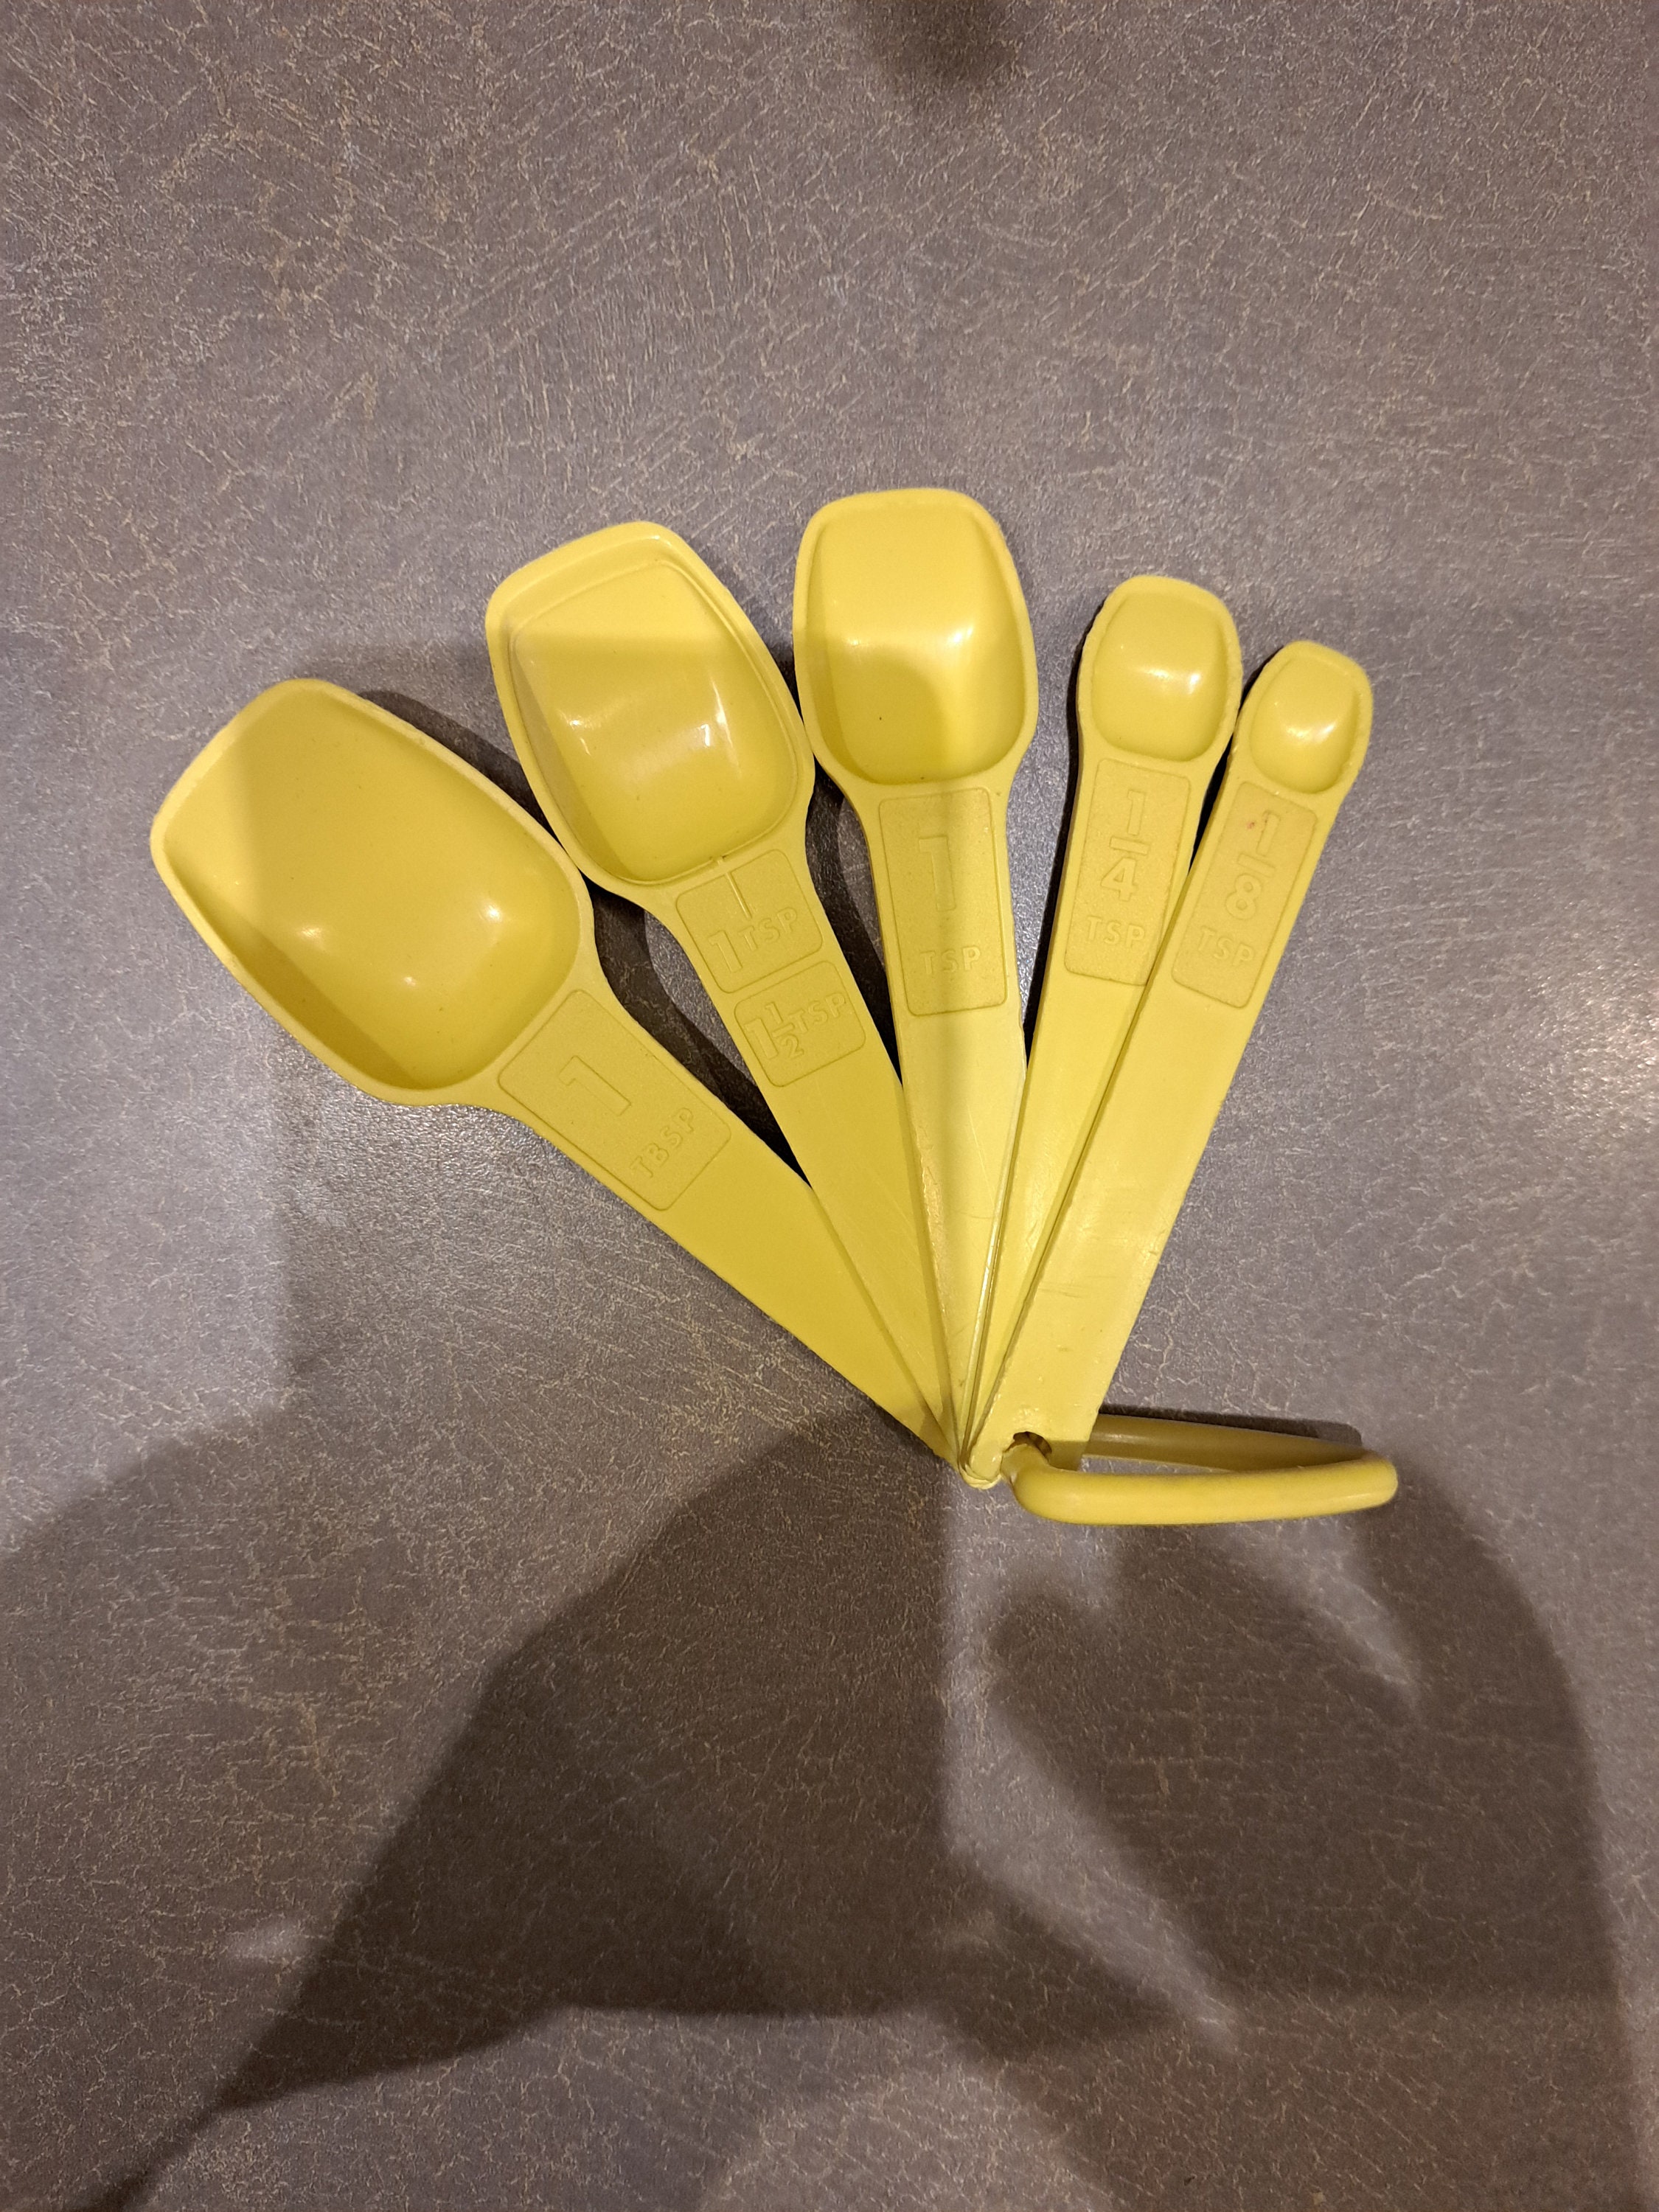 Vintage Tupperware Yellow Measuring Spoon Set Vintage Kitchen